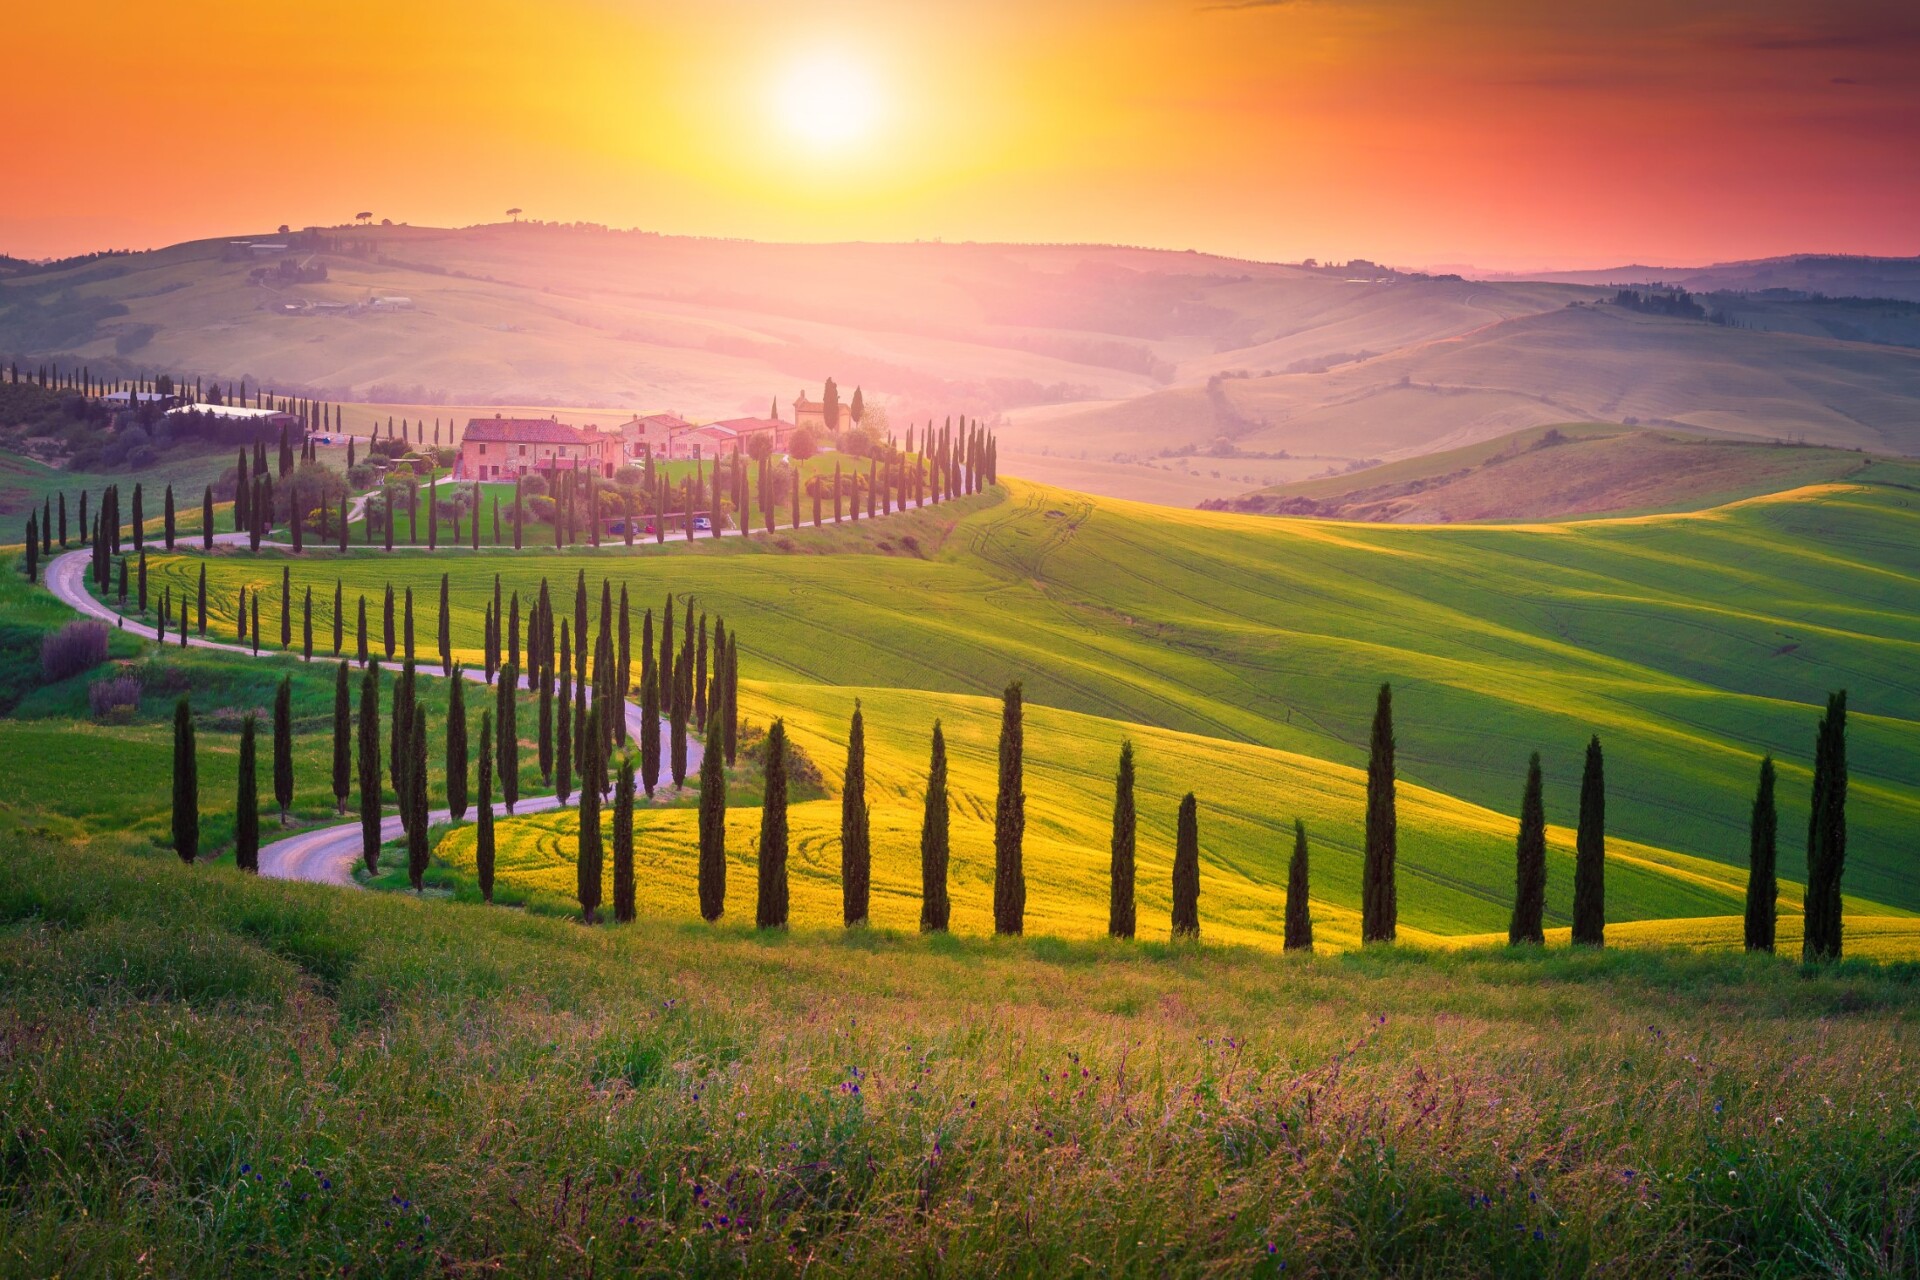 Toskania atrakcje, Znany krajobraz Toskanii z polami zbożowymi, cyprysami i domami na wzgórzach o zachodzie słońca. Letni krajobraz wiejski z zakrzywioną drogą w Toskanii, Włochy, Europa